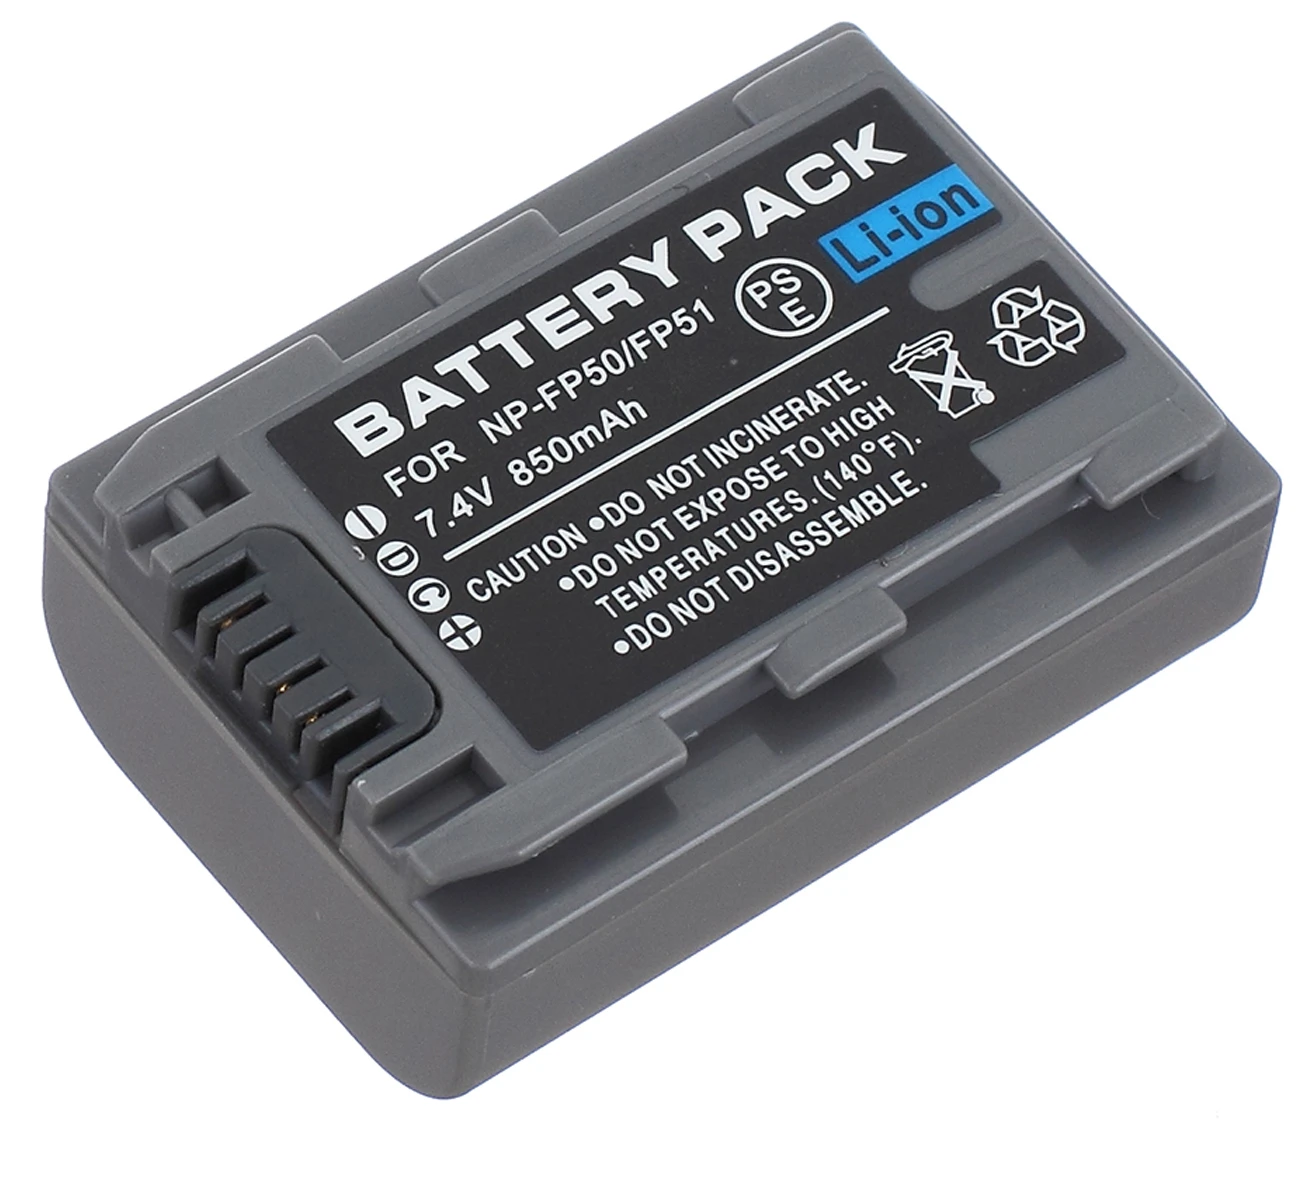 DCR-DVD203E USB Travel Battery Charger for Sony DCR-DVD202E DCR-DVD205E Handycam Camcorder 